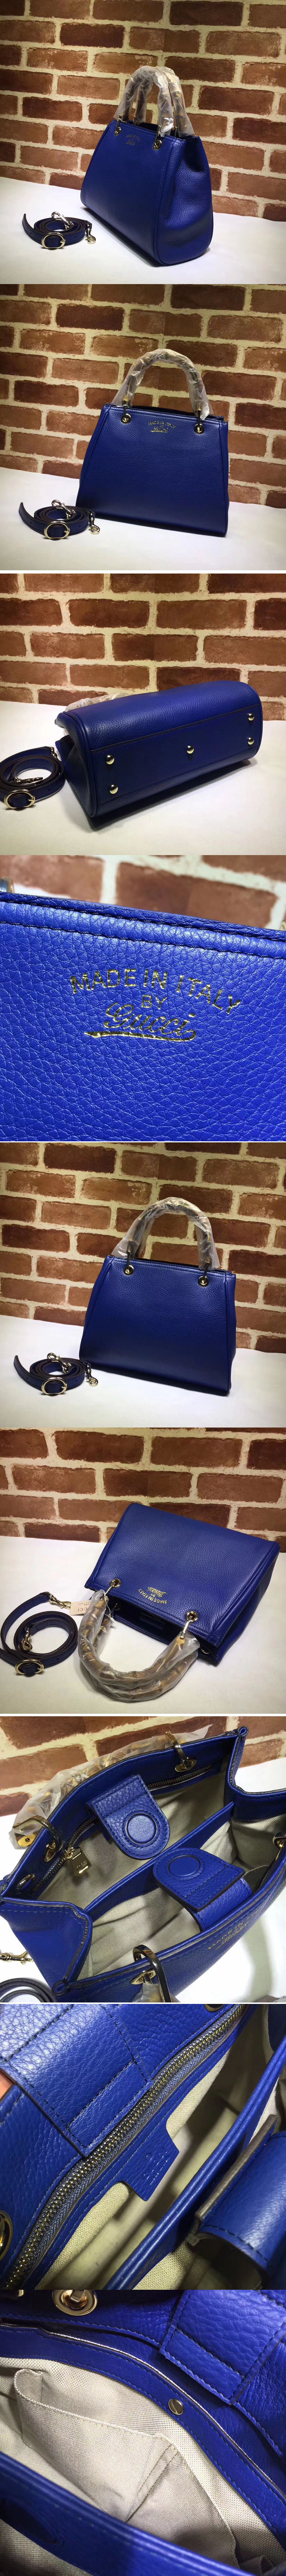 Replica Gucci 336032 Bamboo Shopper Tote Bags Calfskin Leather Blue